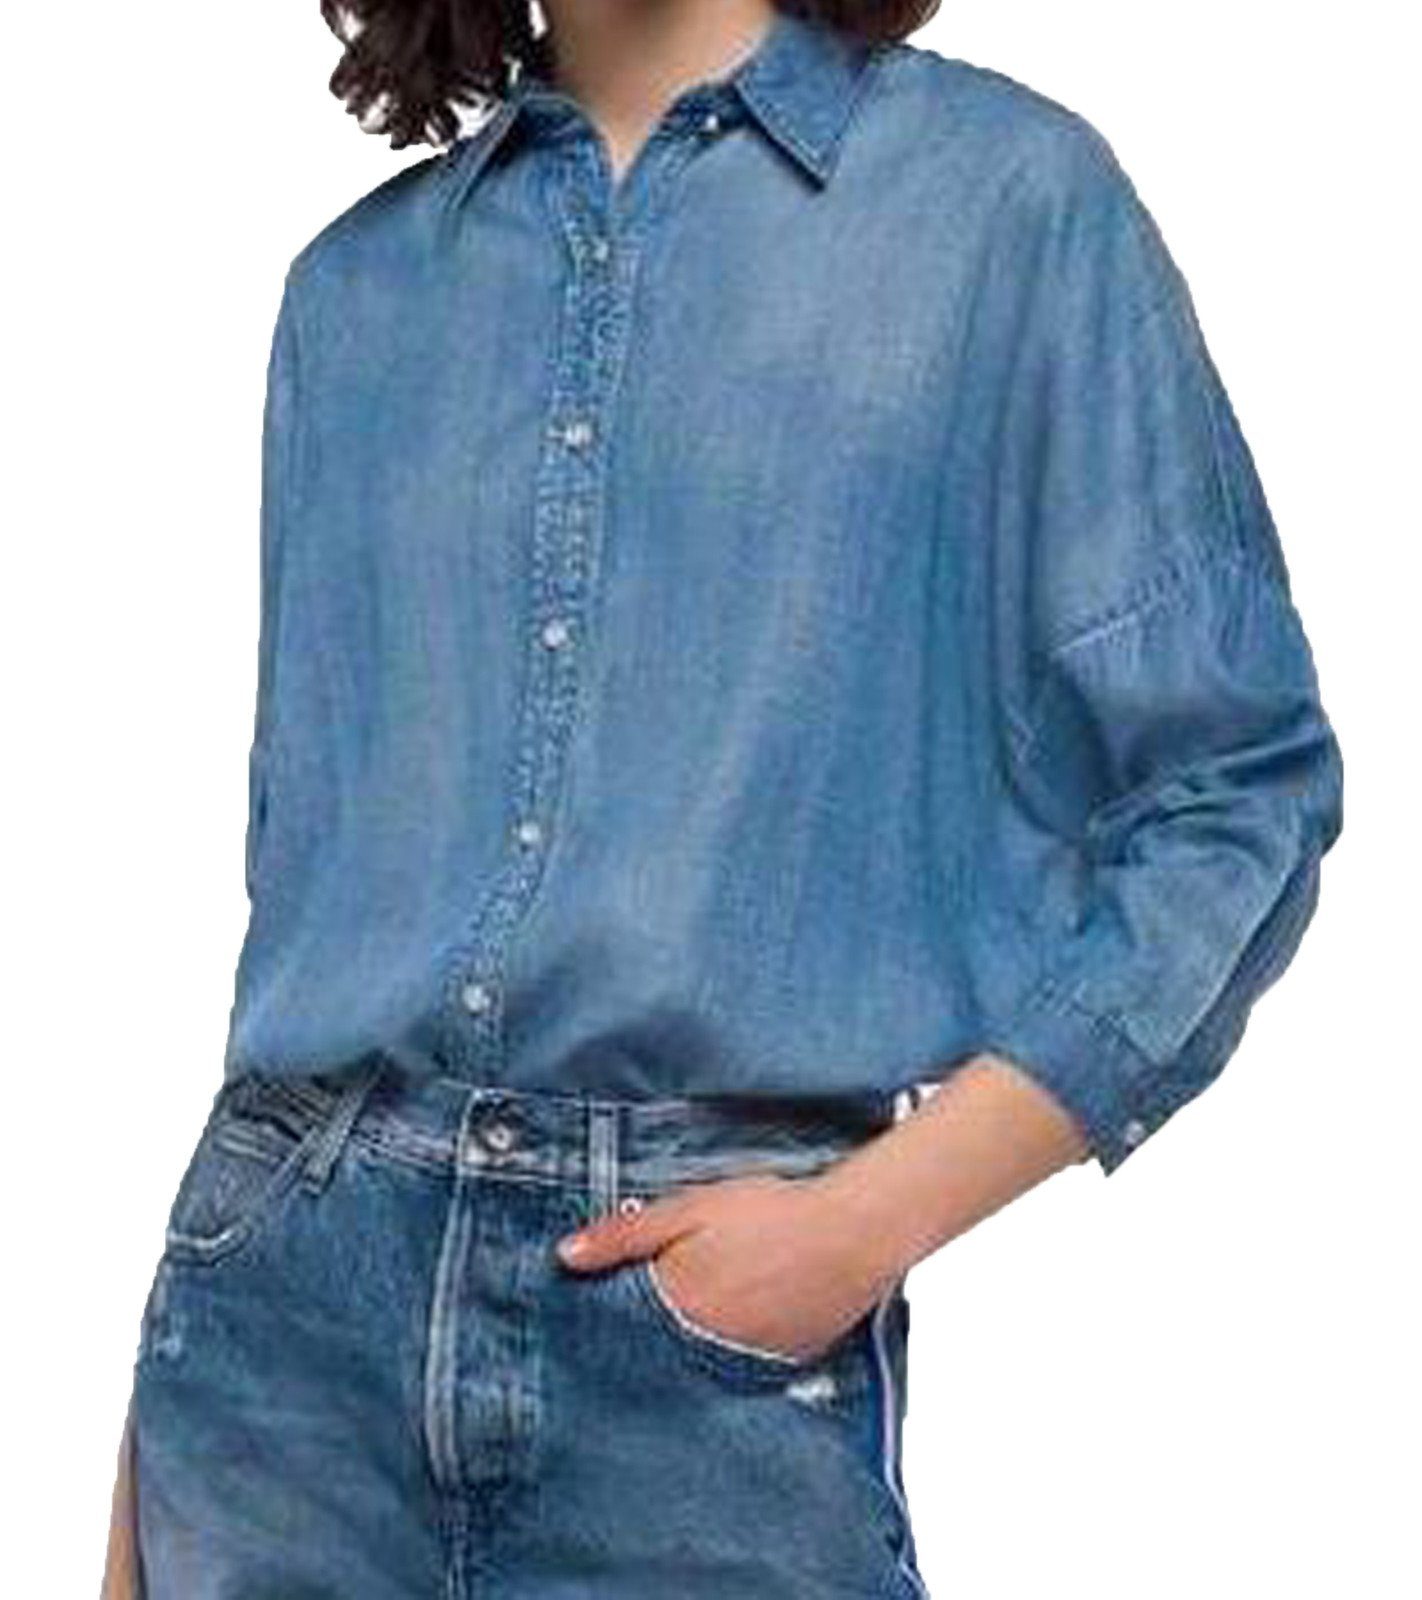 Replay Hemdbluse »REPLAY Hemd-Bluse stilvolle Damen Freizeit Long-Bluse  Business-Hemd mit leicht längerem Hinterteil Hand-Made in Jeans-Hemd Optik  Hellblau« online kaufen | OTTO